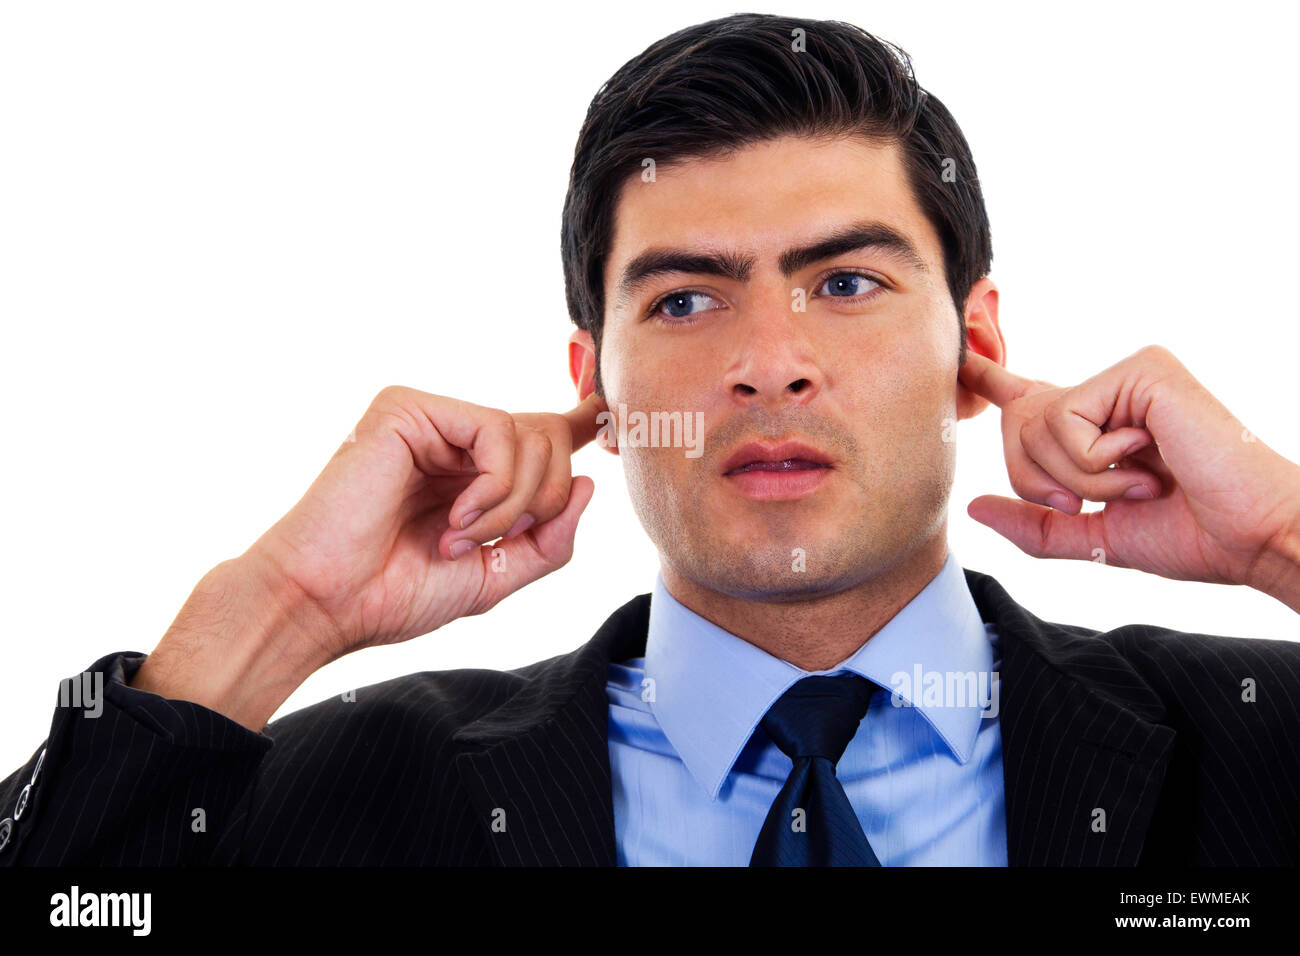 Immagine di stock di imprenditore che copre le sue orecchie con le sue mani, su sfondo bianco Foto Stock